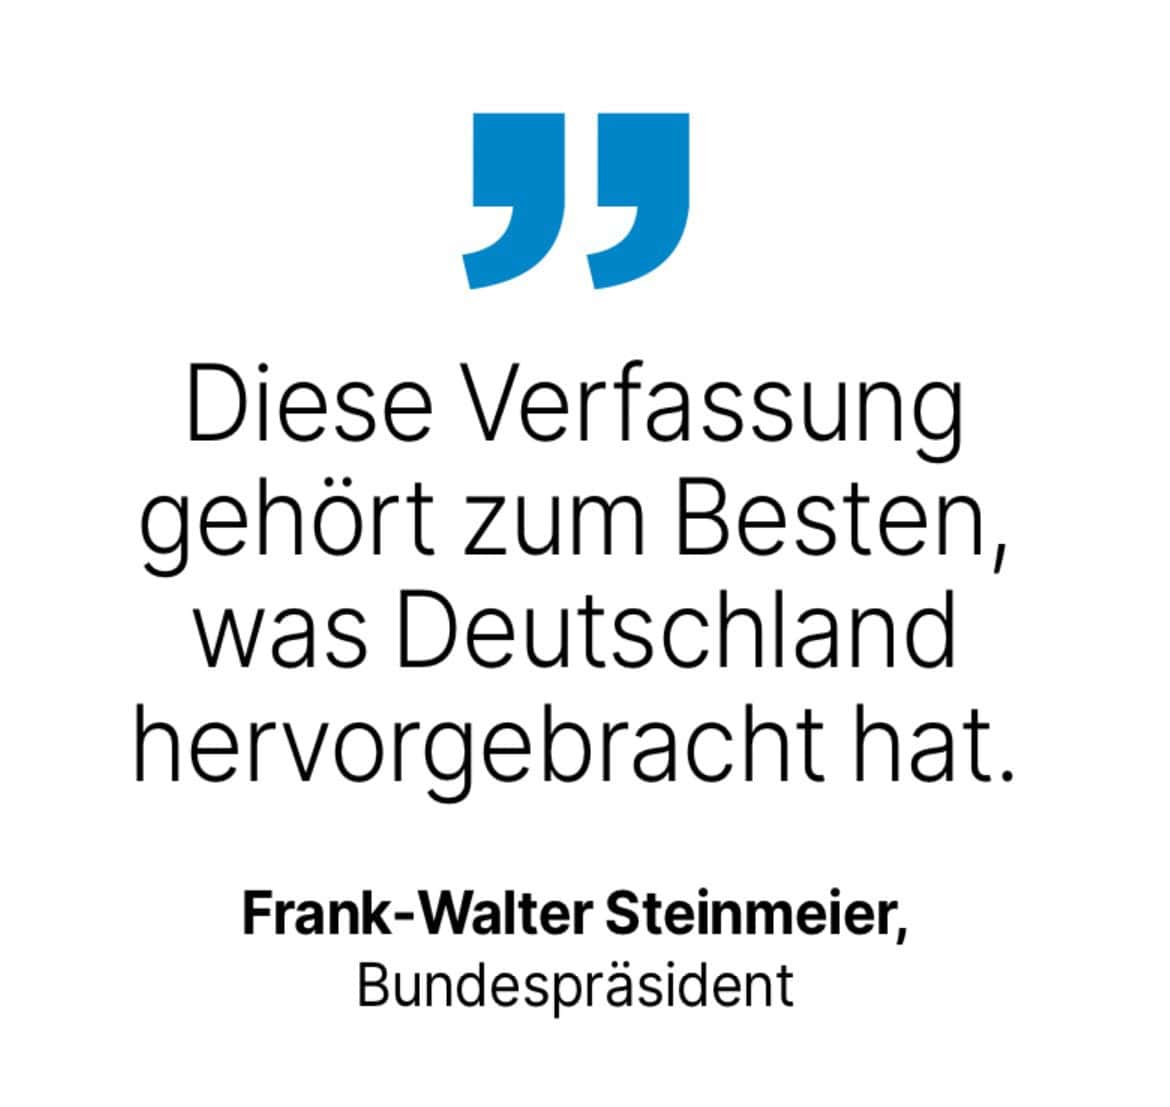 Frank-Walter Steinmeier, Bundespräsident: Diese Verfassung gehört zum Besten, was Deutschland hervorgebracht hat.